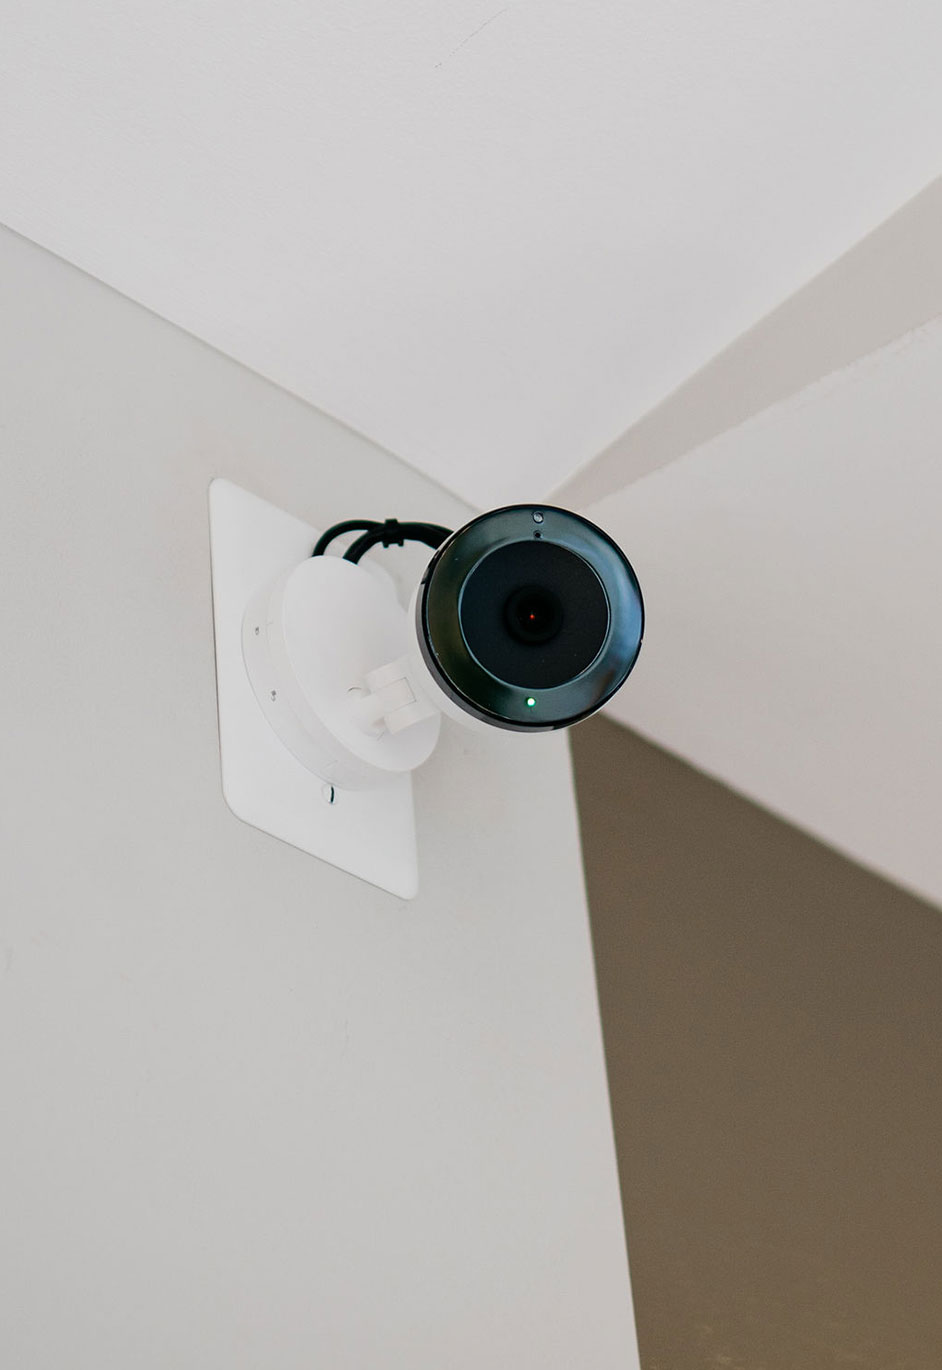 Indoor Security Camera in Corner of Room